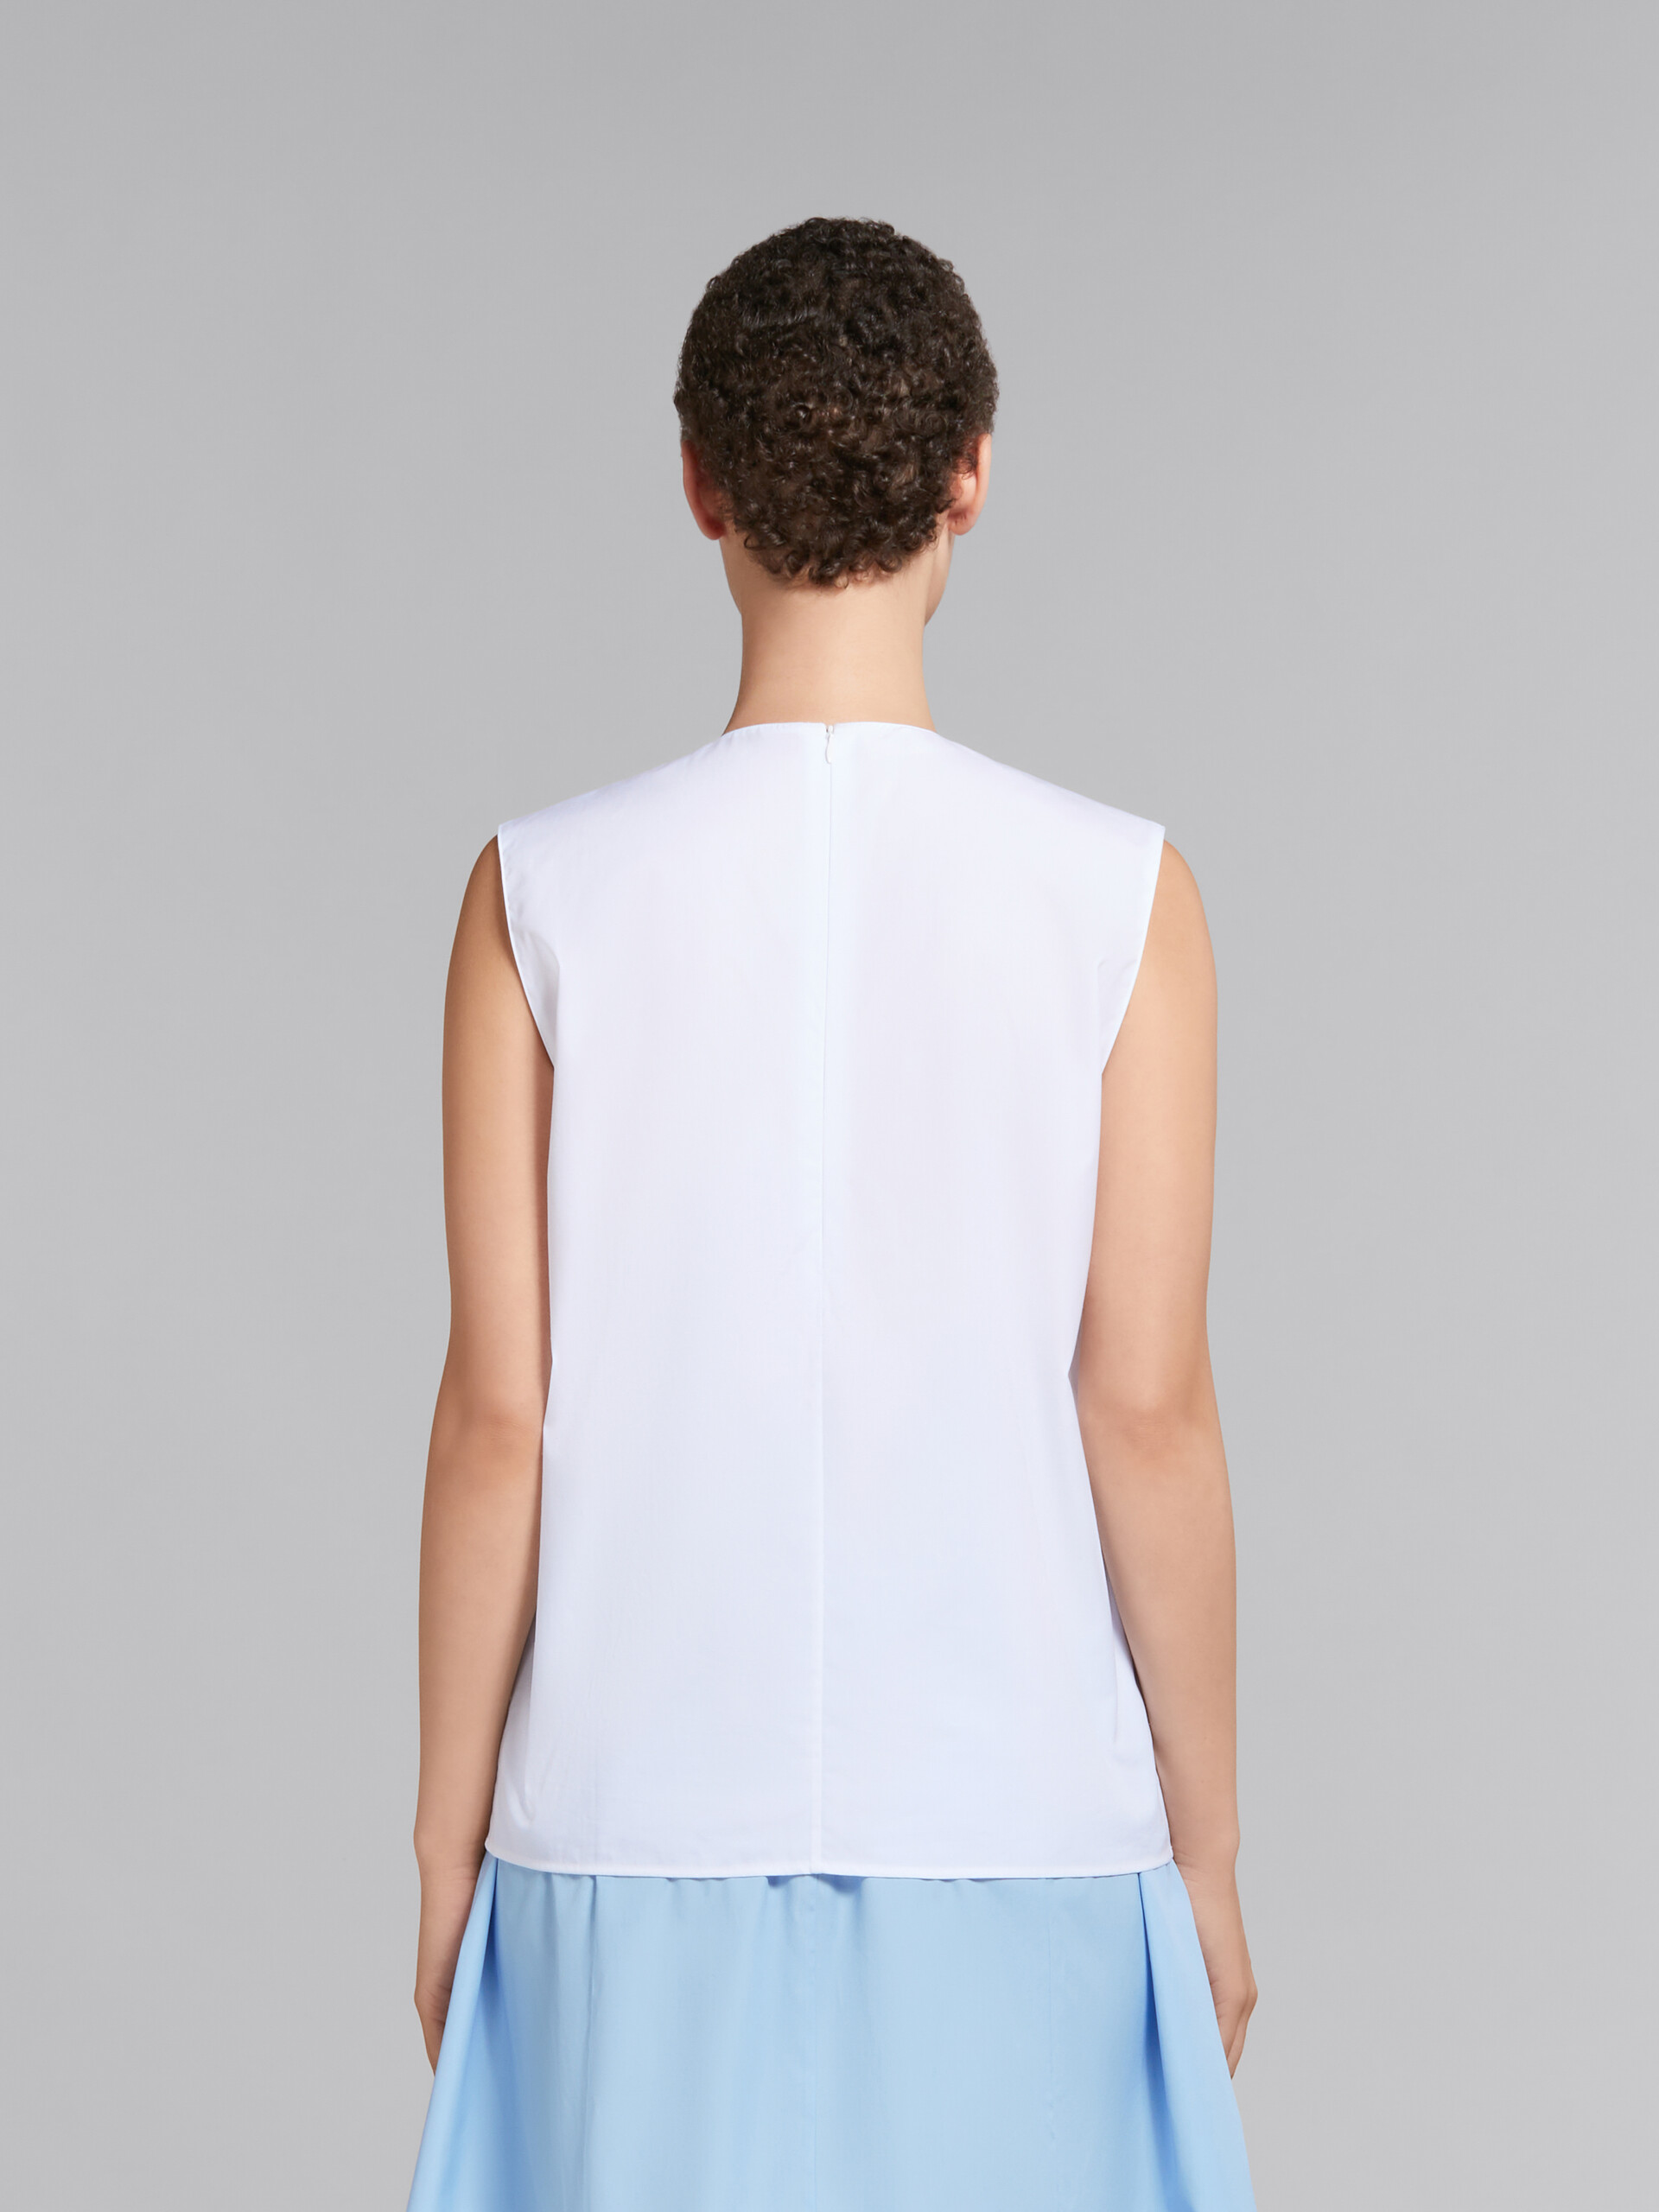 Top blanco sin mangas de popelina ecológica con detalles plisados - Camisas - Image 3